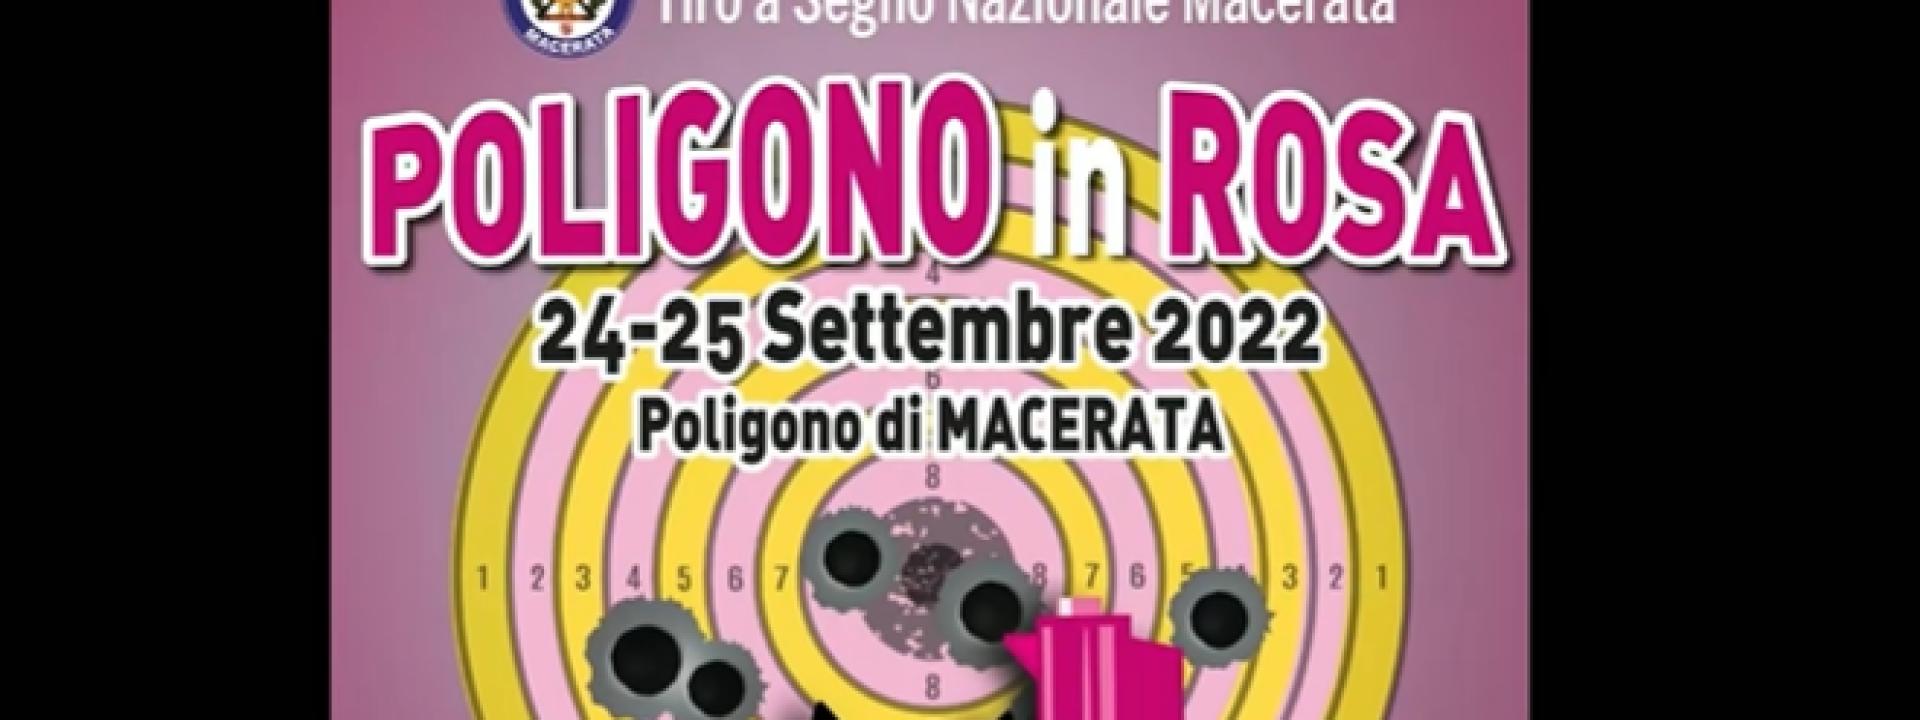 Marche - A Macerata il 24 e 25 settembre arriva il 